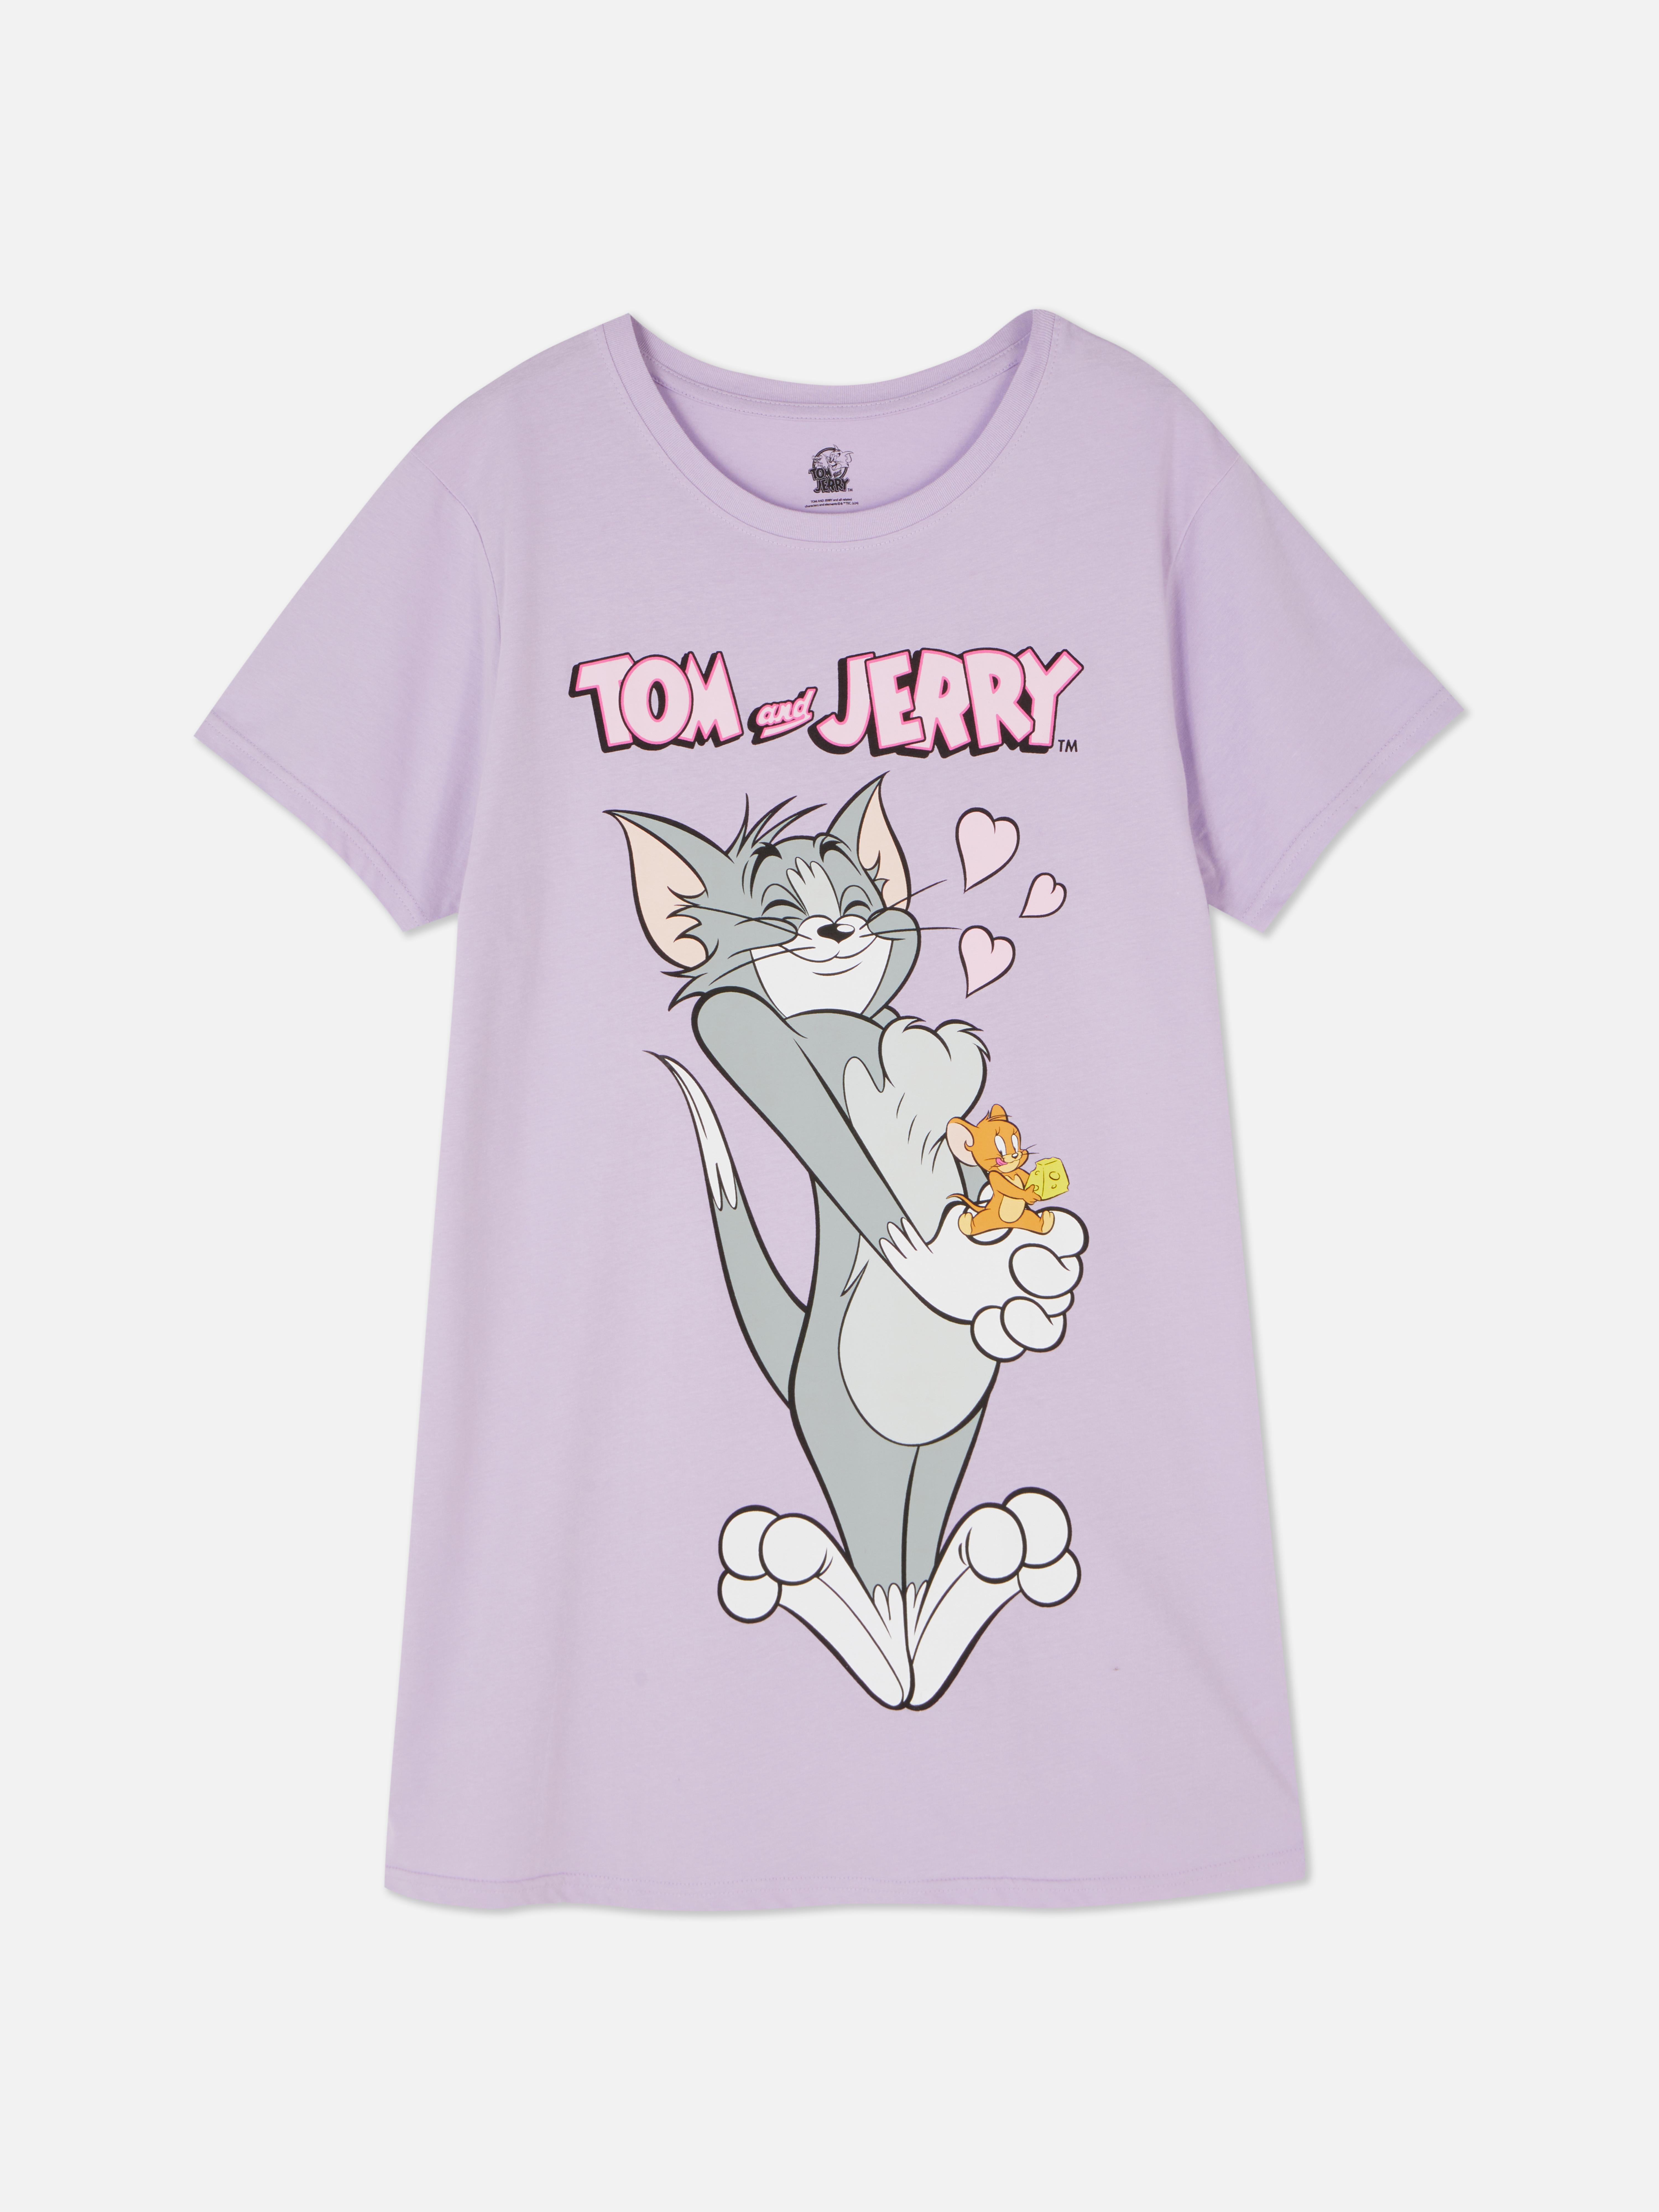 T-shirt dormir estampada Warner Bros Tom e Jerry